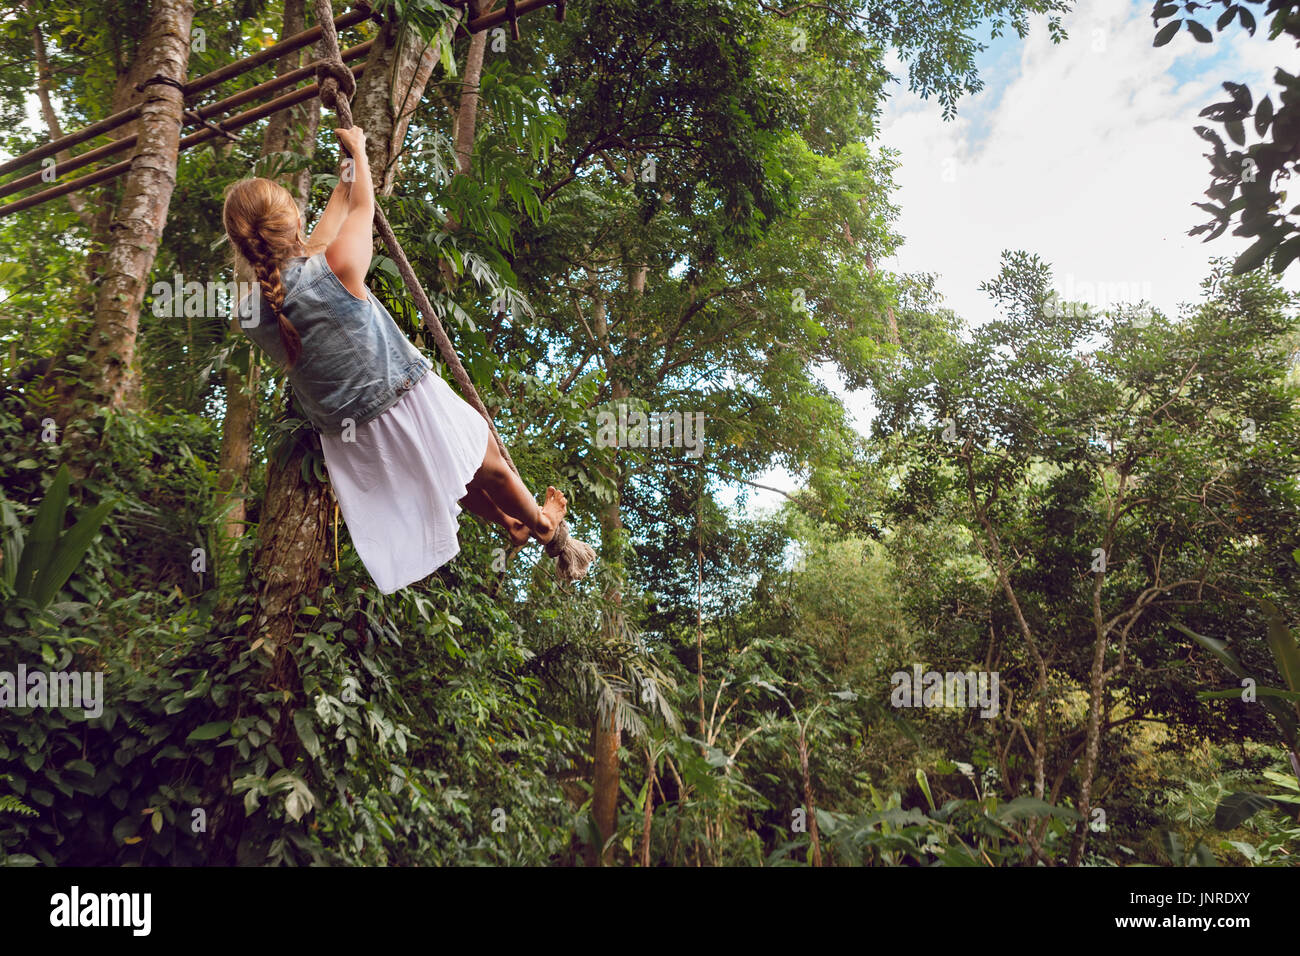 Des voyages en famille de vie. Happy young woman flying high avec plaisir sur rope swing sur fond de jungle sauvage. Aventure drôle de marcher dans la forêt tropicale. Banque D'Images